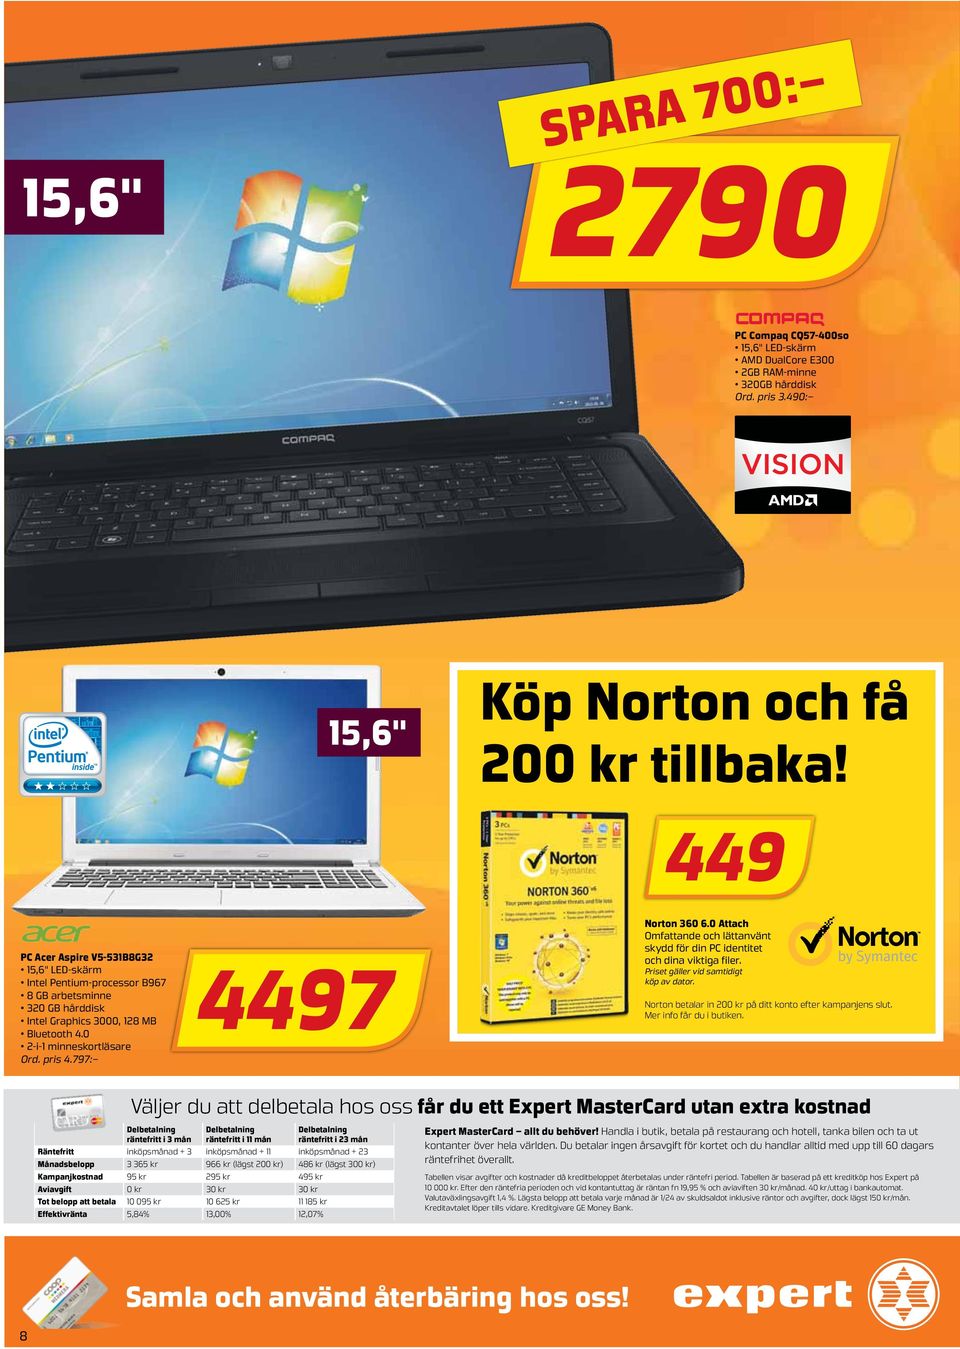 797: 4497 Norton 360 6.0 Attach Omfattande och lättanvänt skydd för din PC identitet och dina viktiga filer. Priset gäller vid samtidigt köp av dator.